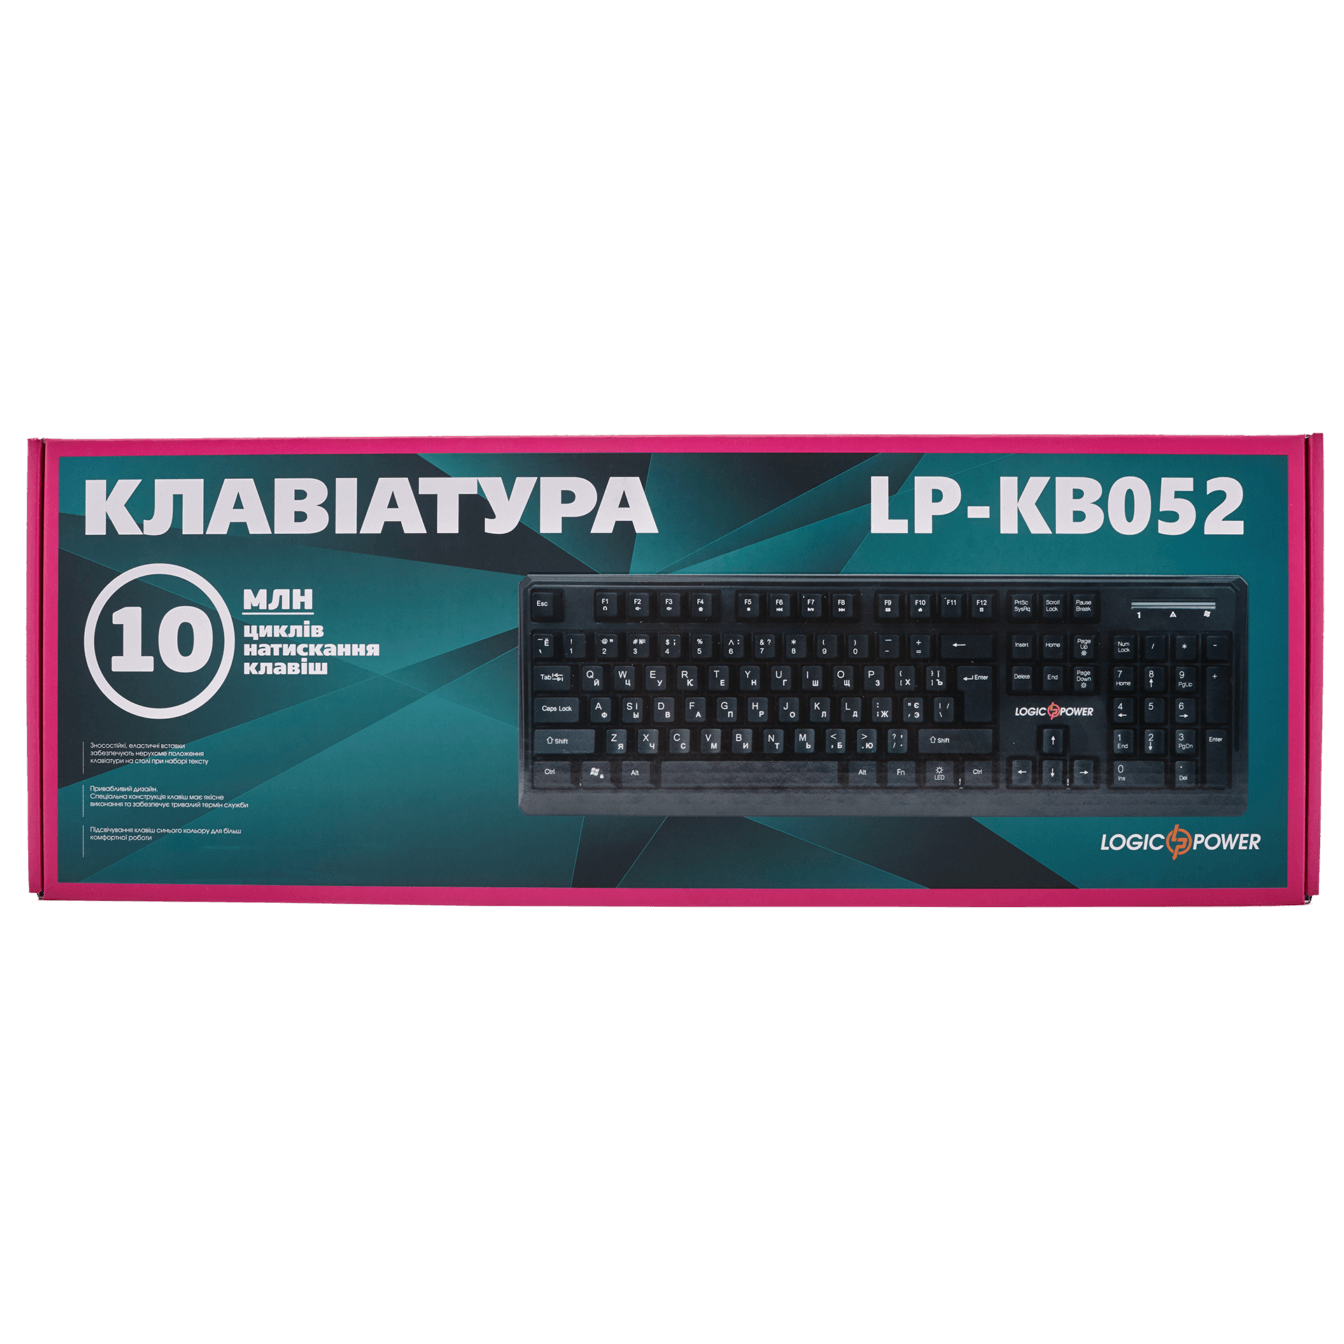 Ігрова комп'ютерна клавіатура LP-KB 052: